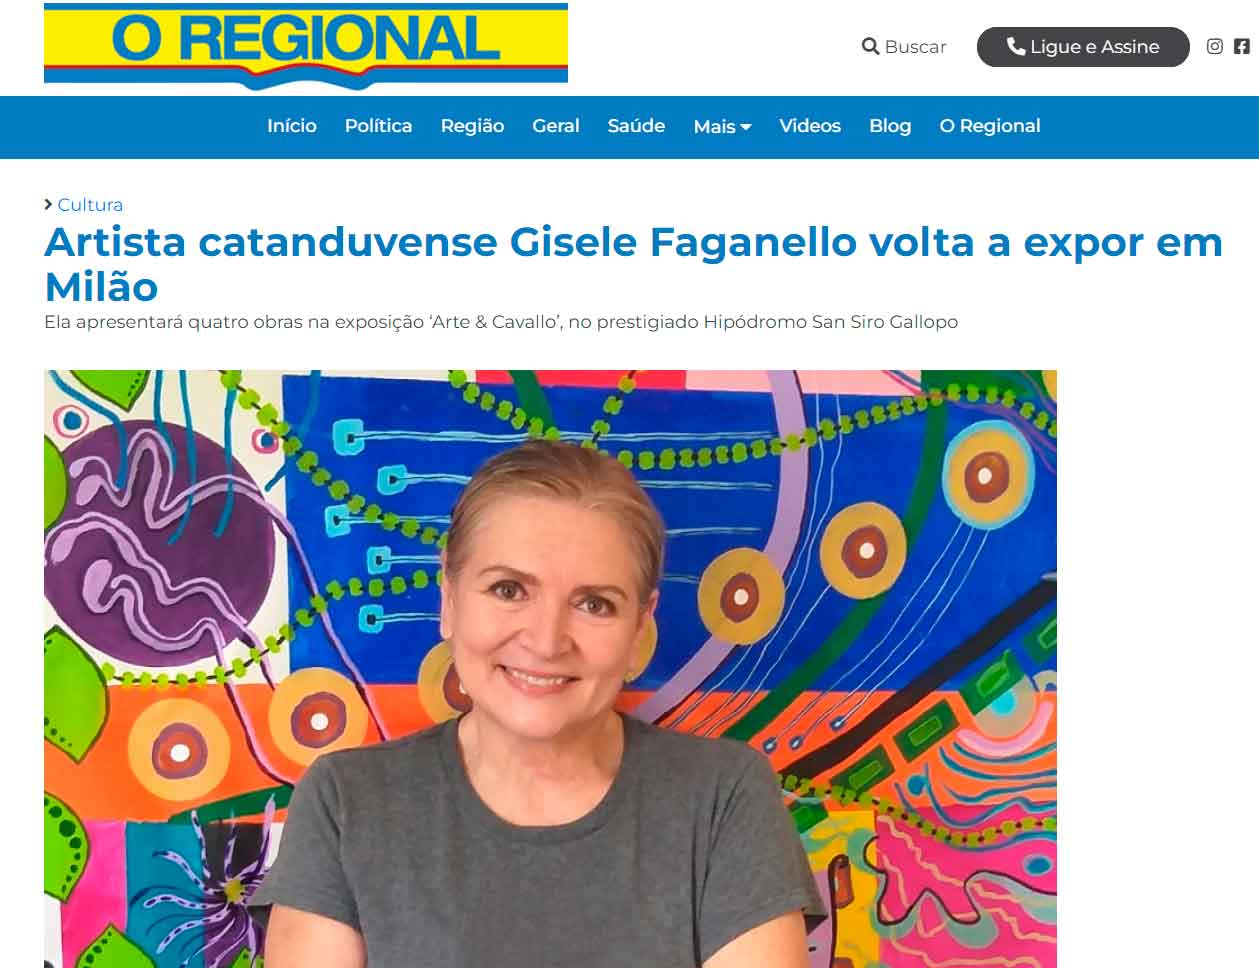 Artista catanduvense Gisele Faganello volta a expor em Milão